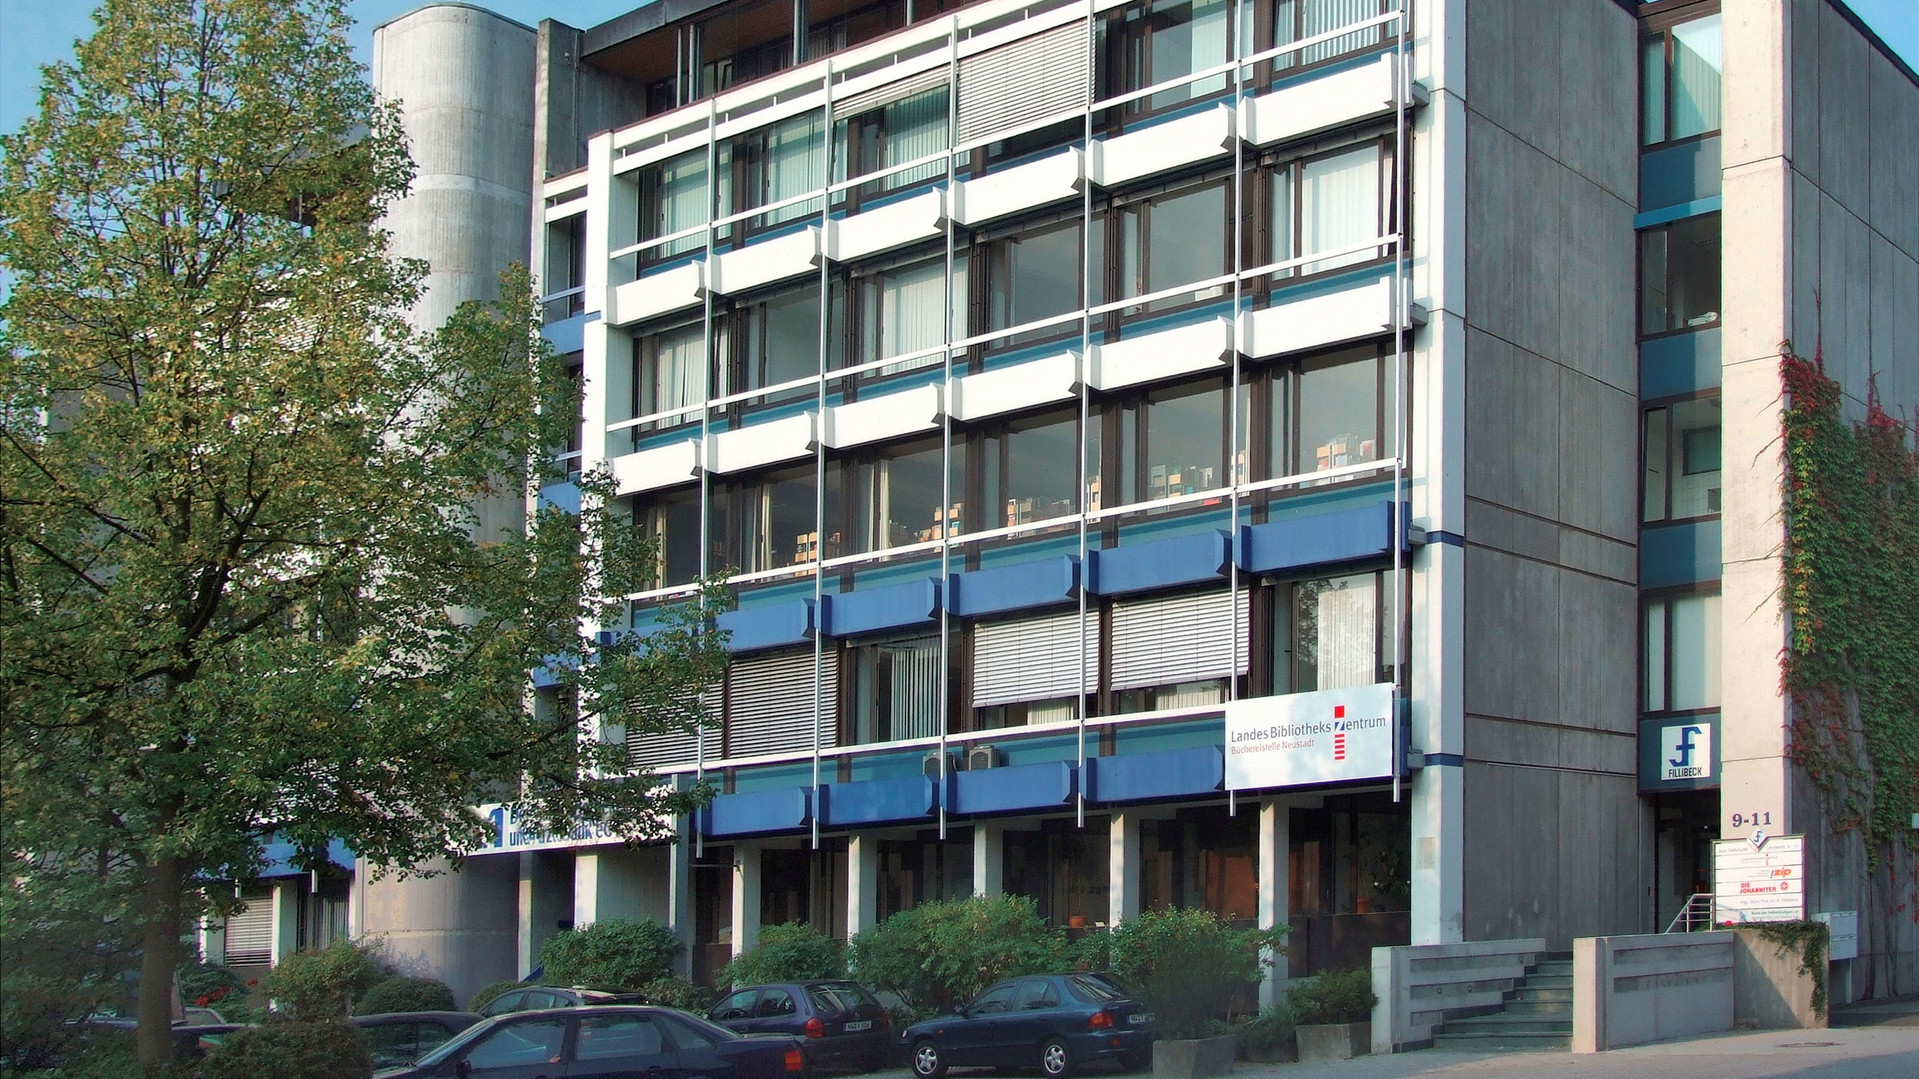 Gebäude Landesbüchereistelle Neustadt